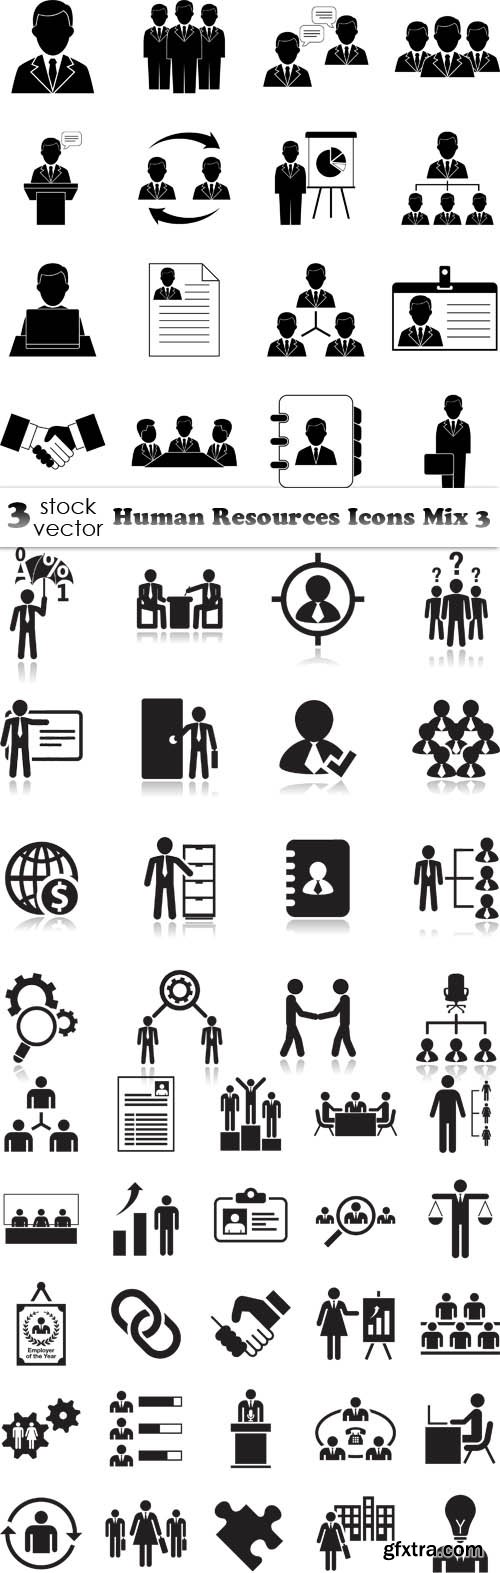 Vectors - Human Resources Icons Mix 3